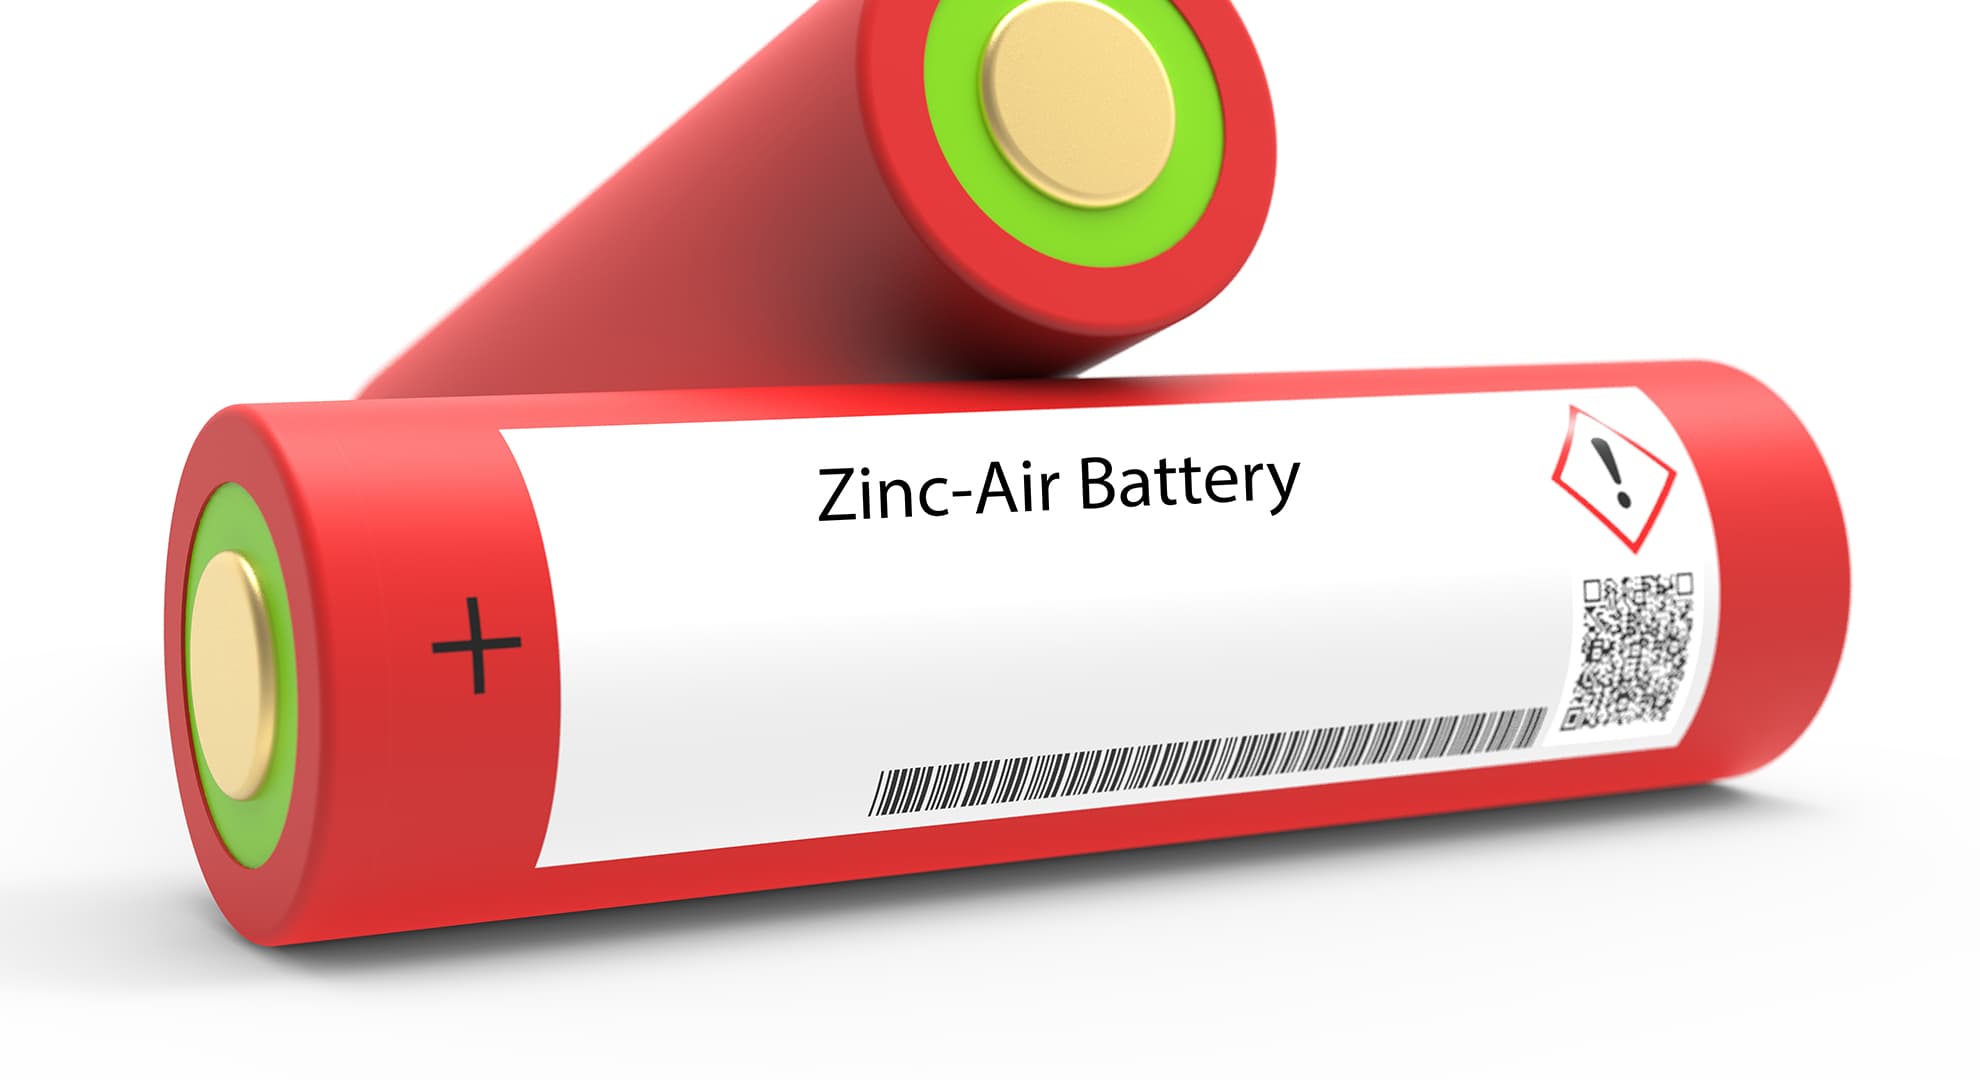 Red zinc-air battery